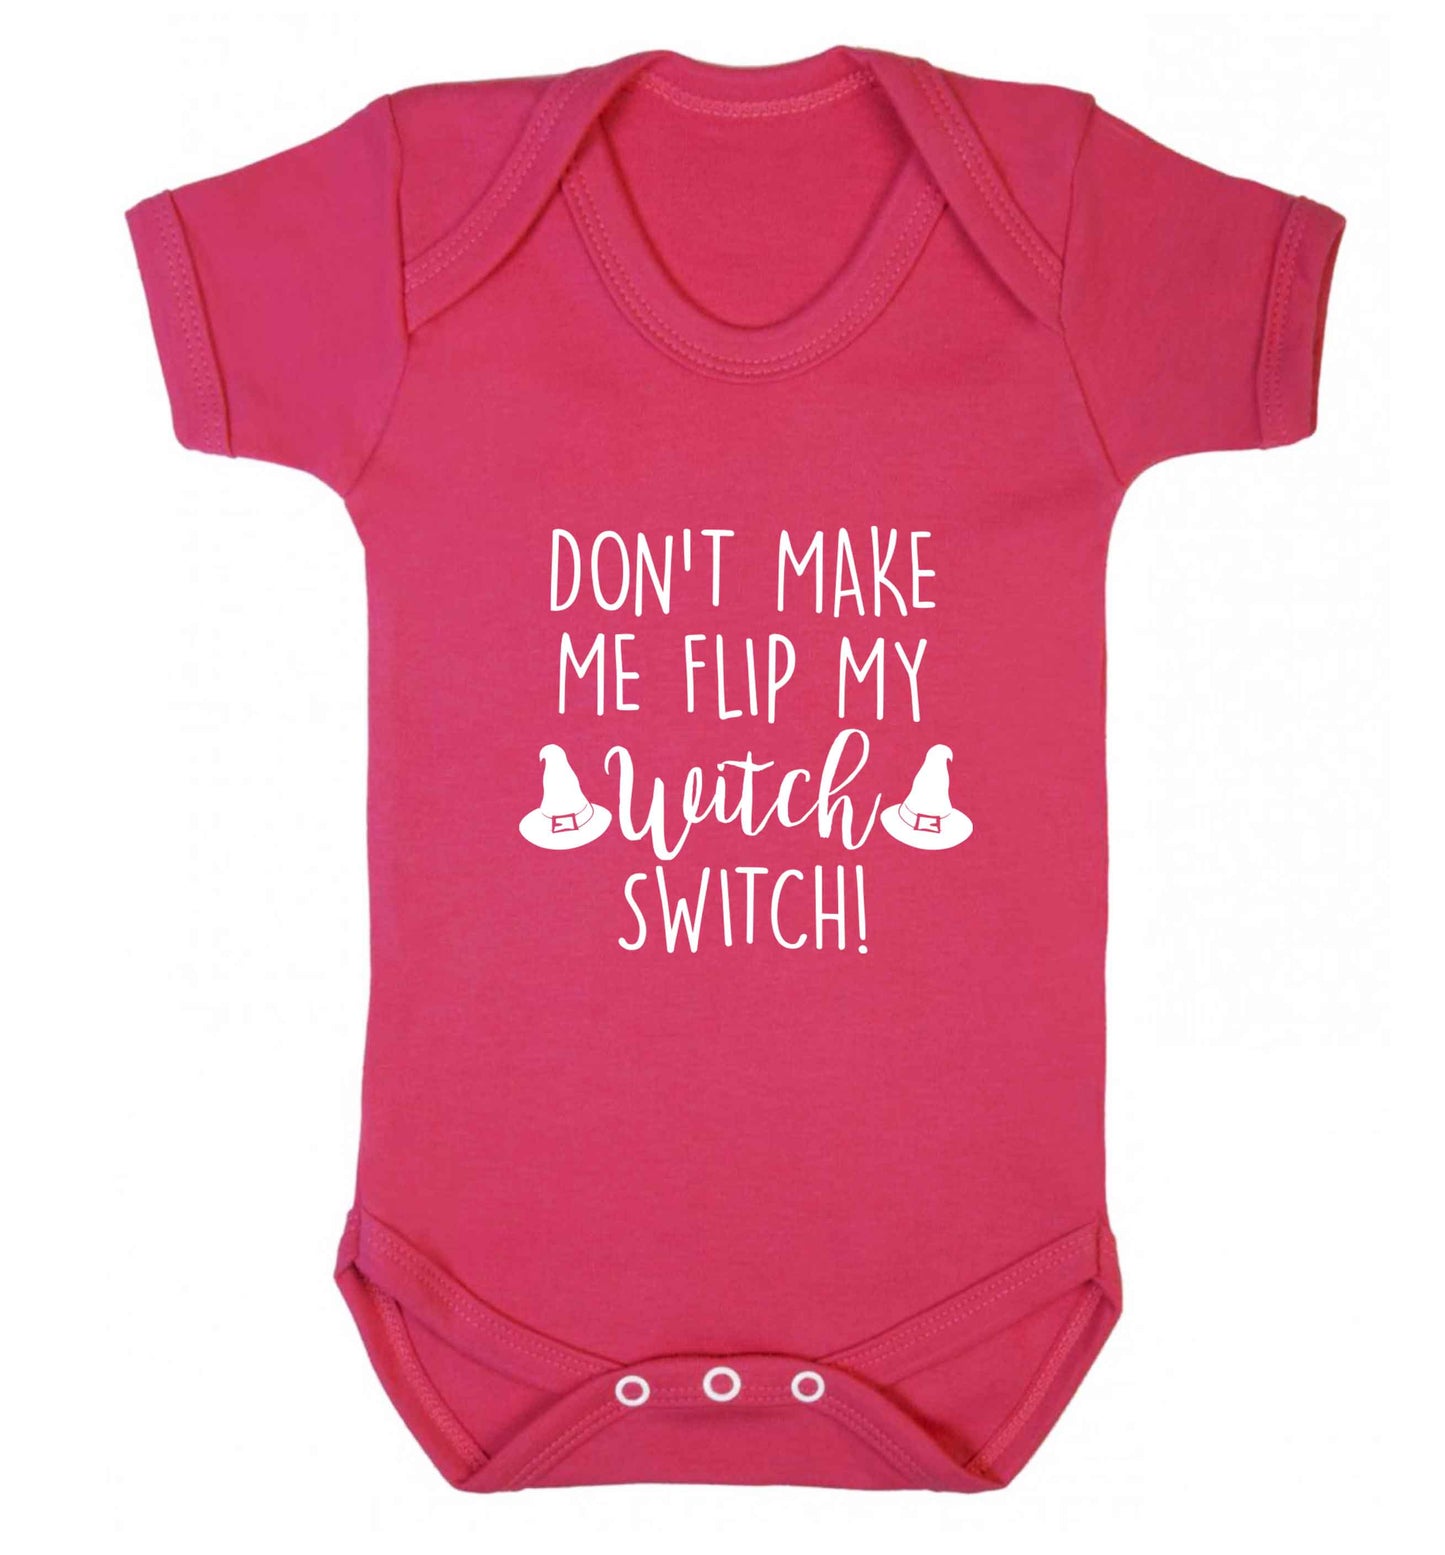 Don't make me flip my witch switch baby vest dark pink 18-24 months